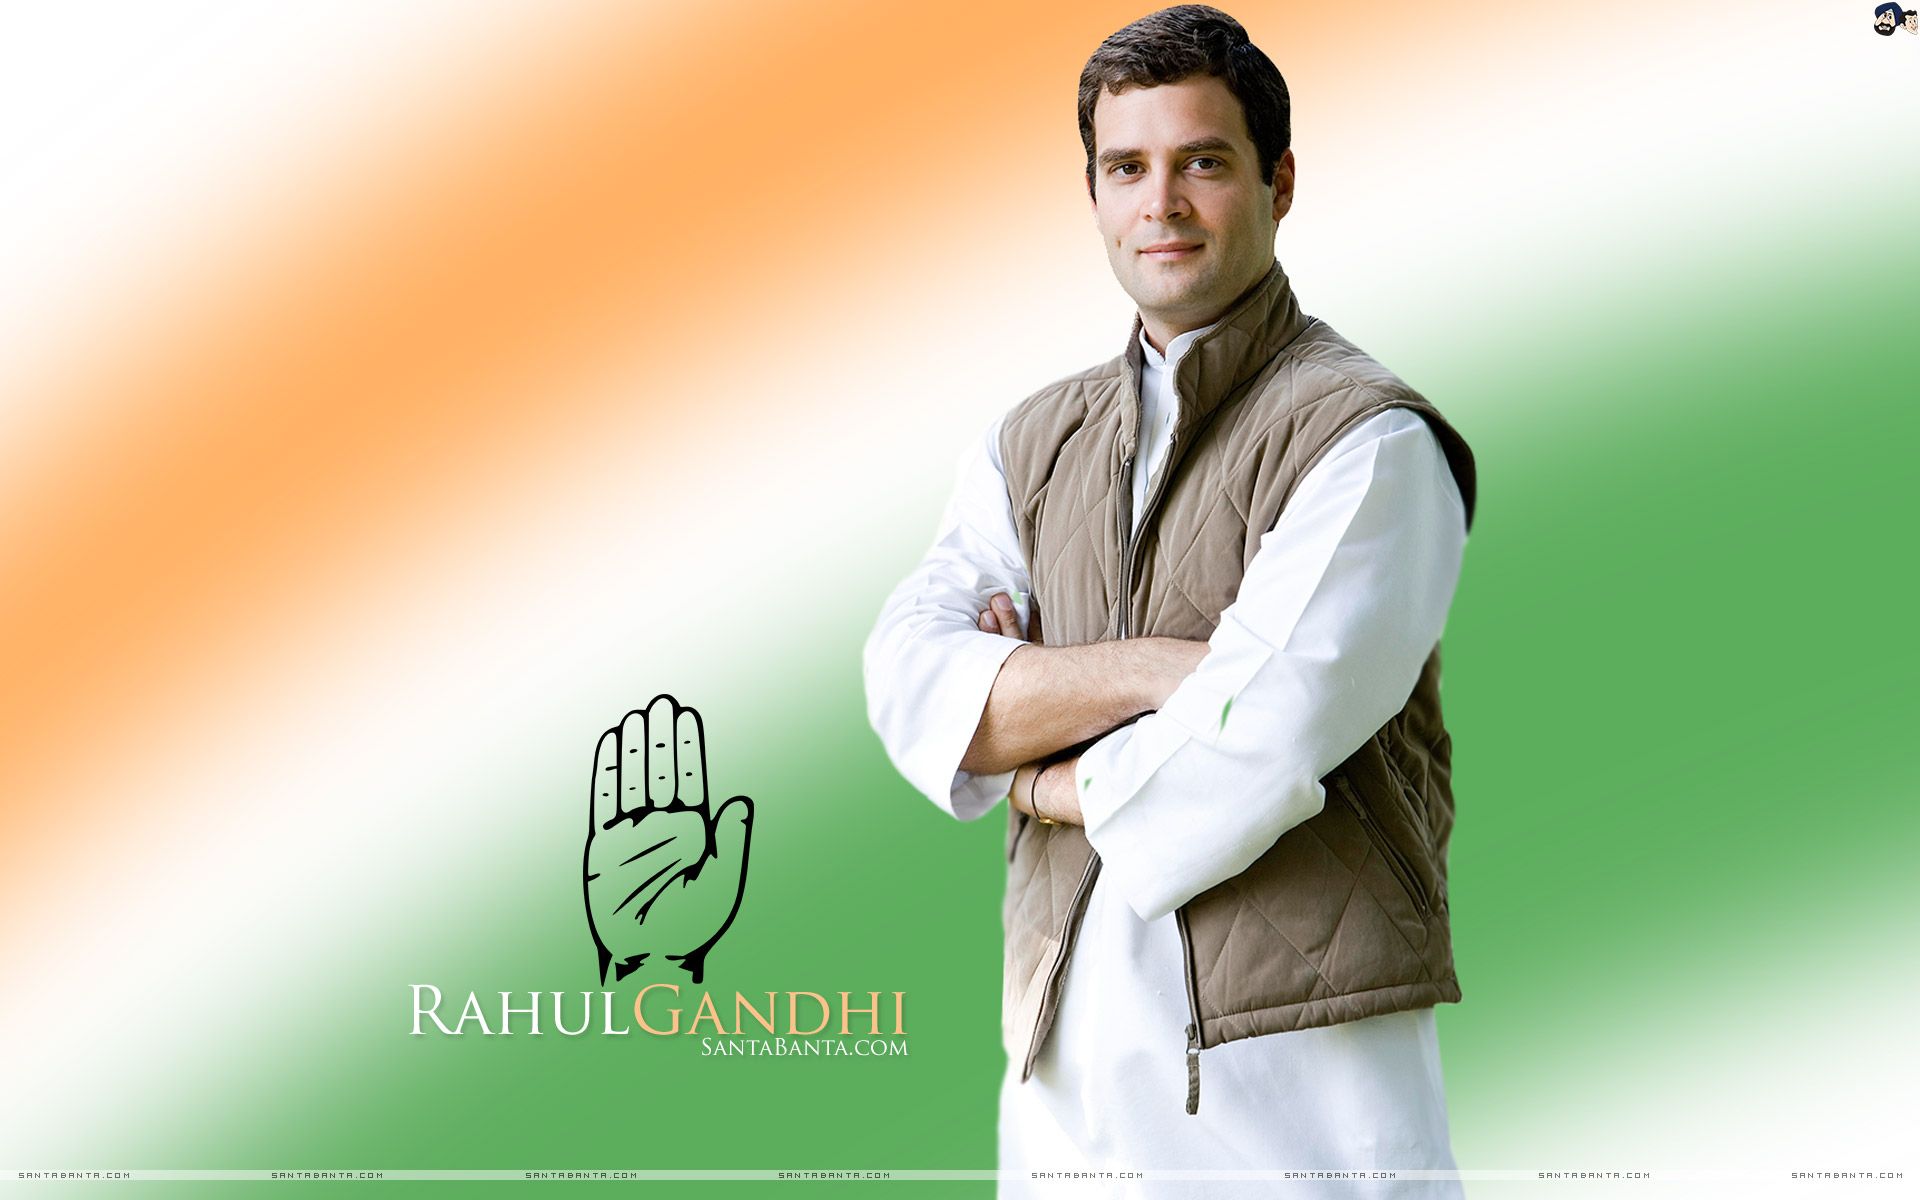 Indian National Congress President, Rahul Gandhi